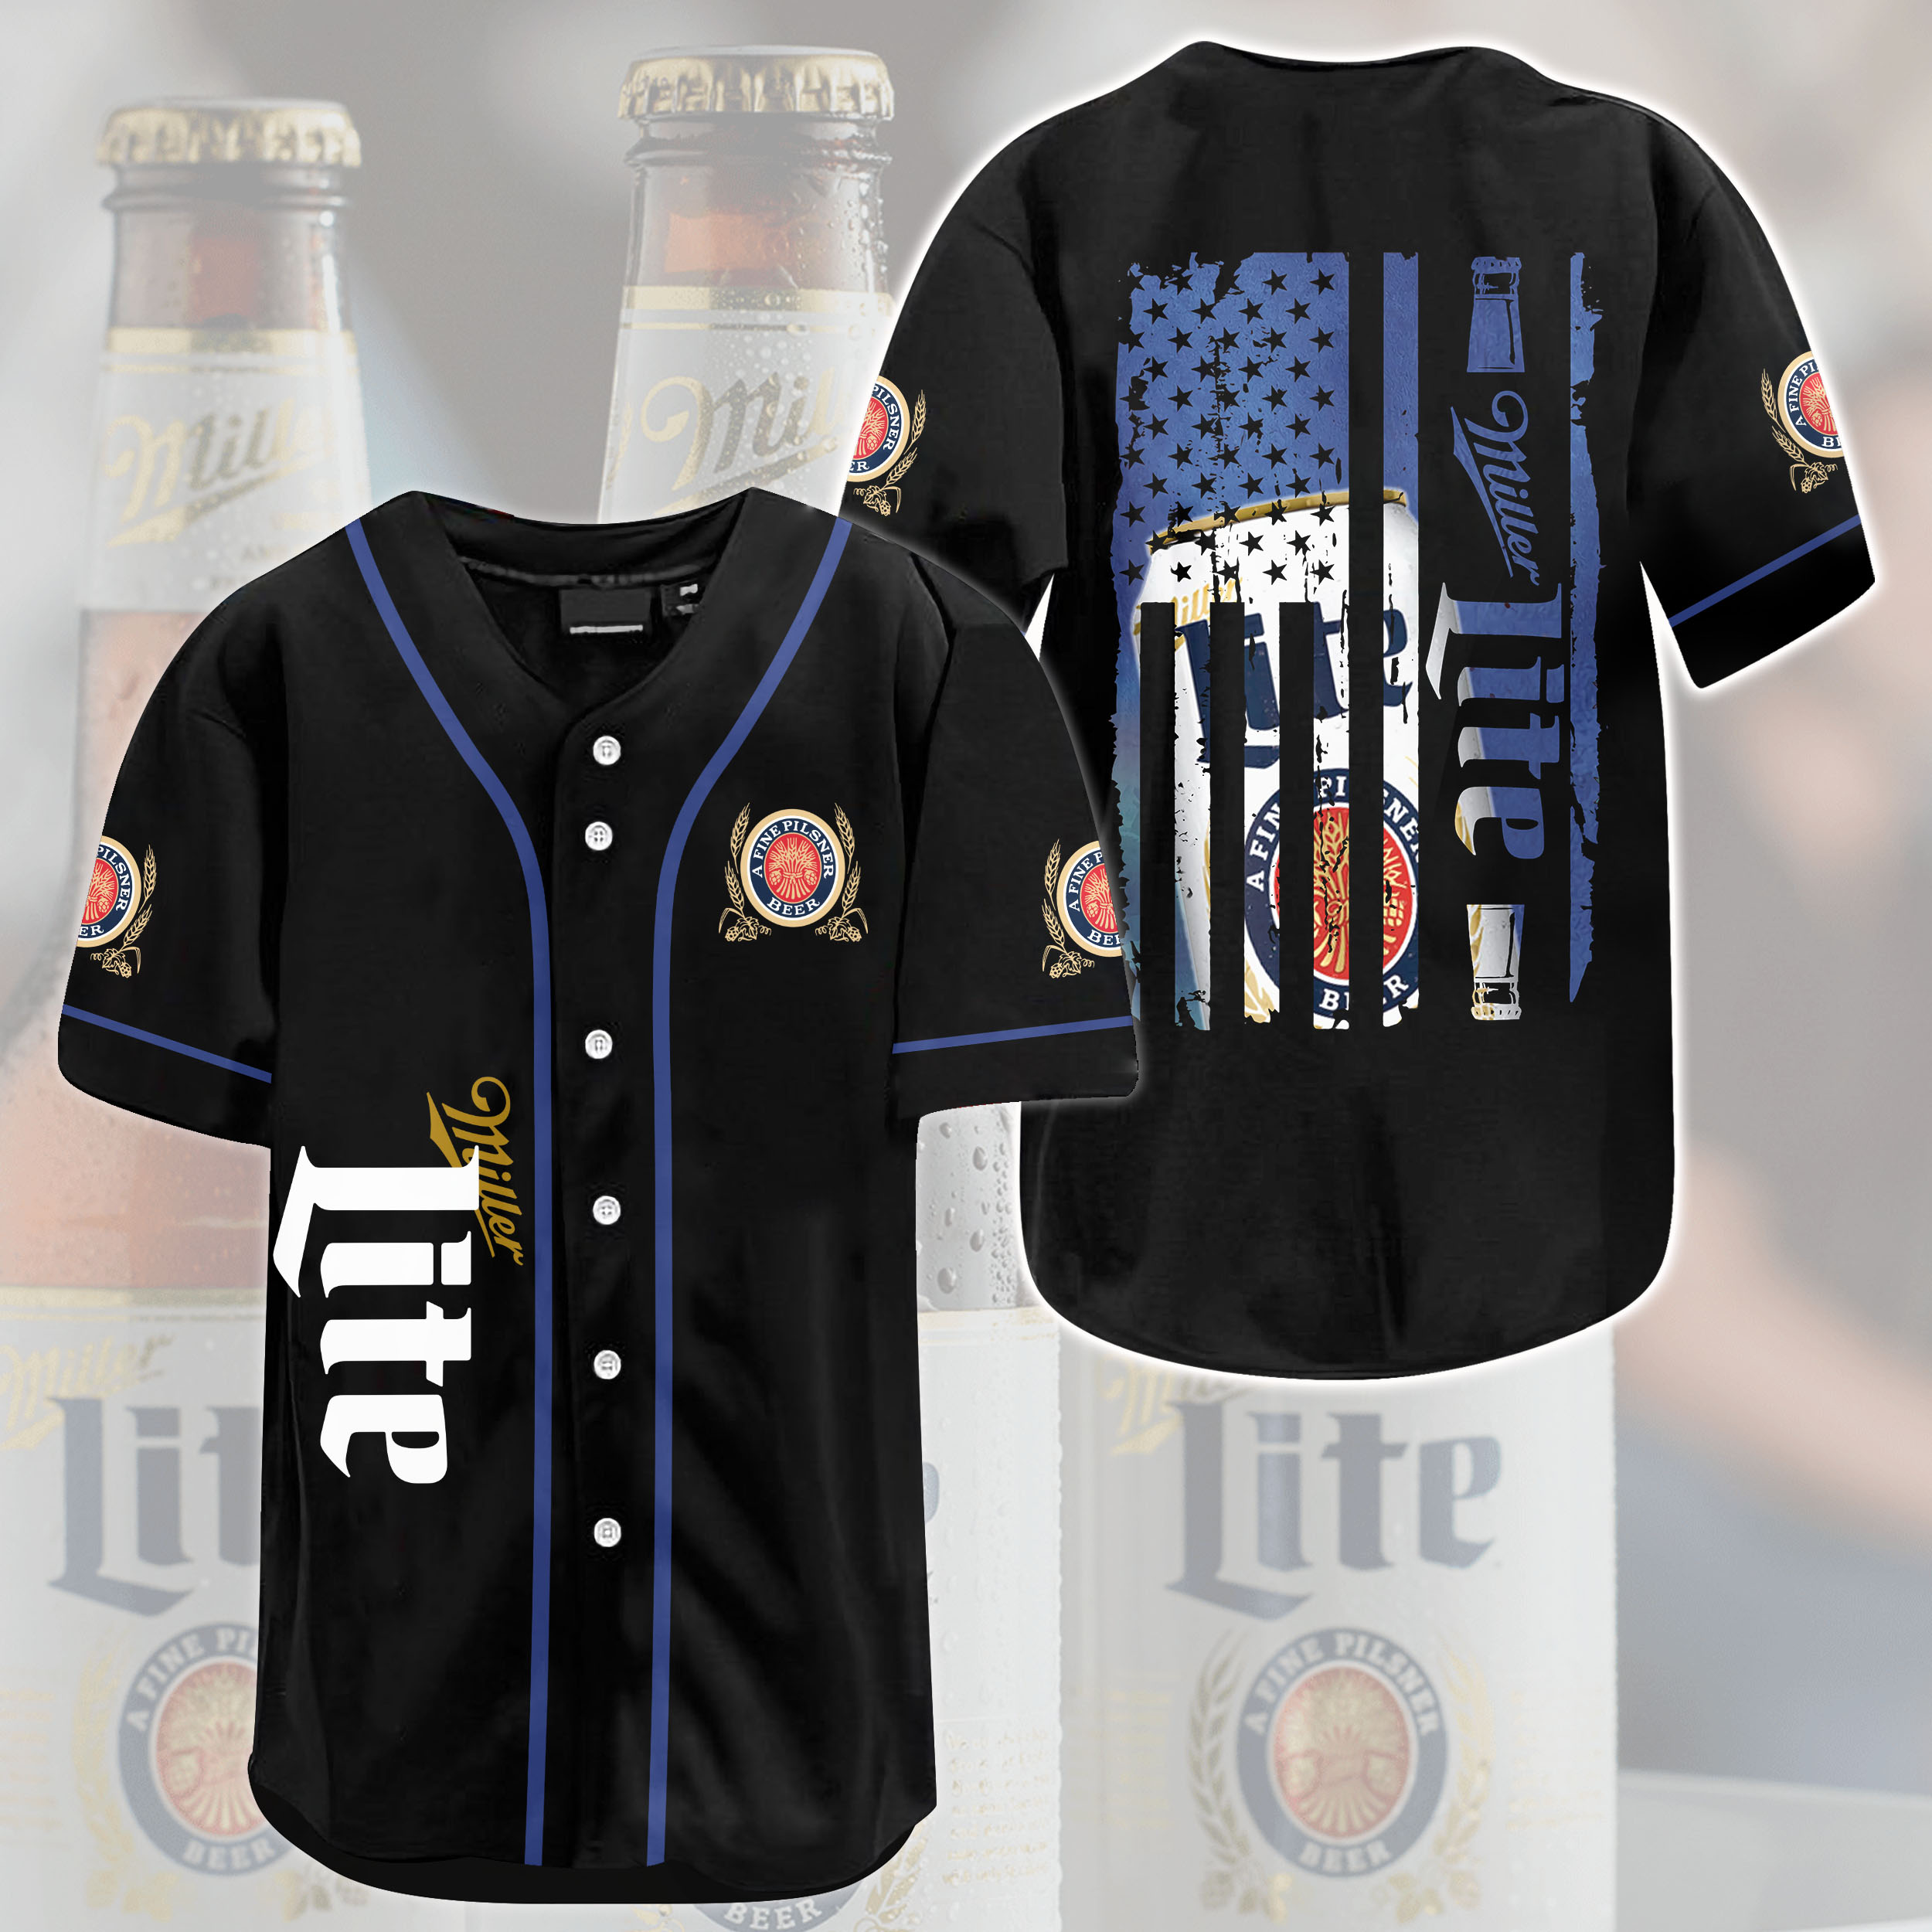 Black Miller Lite Baseball Jersey Beer Lovers Gift